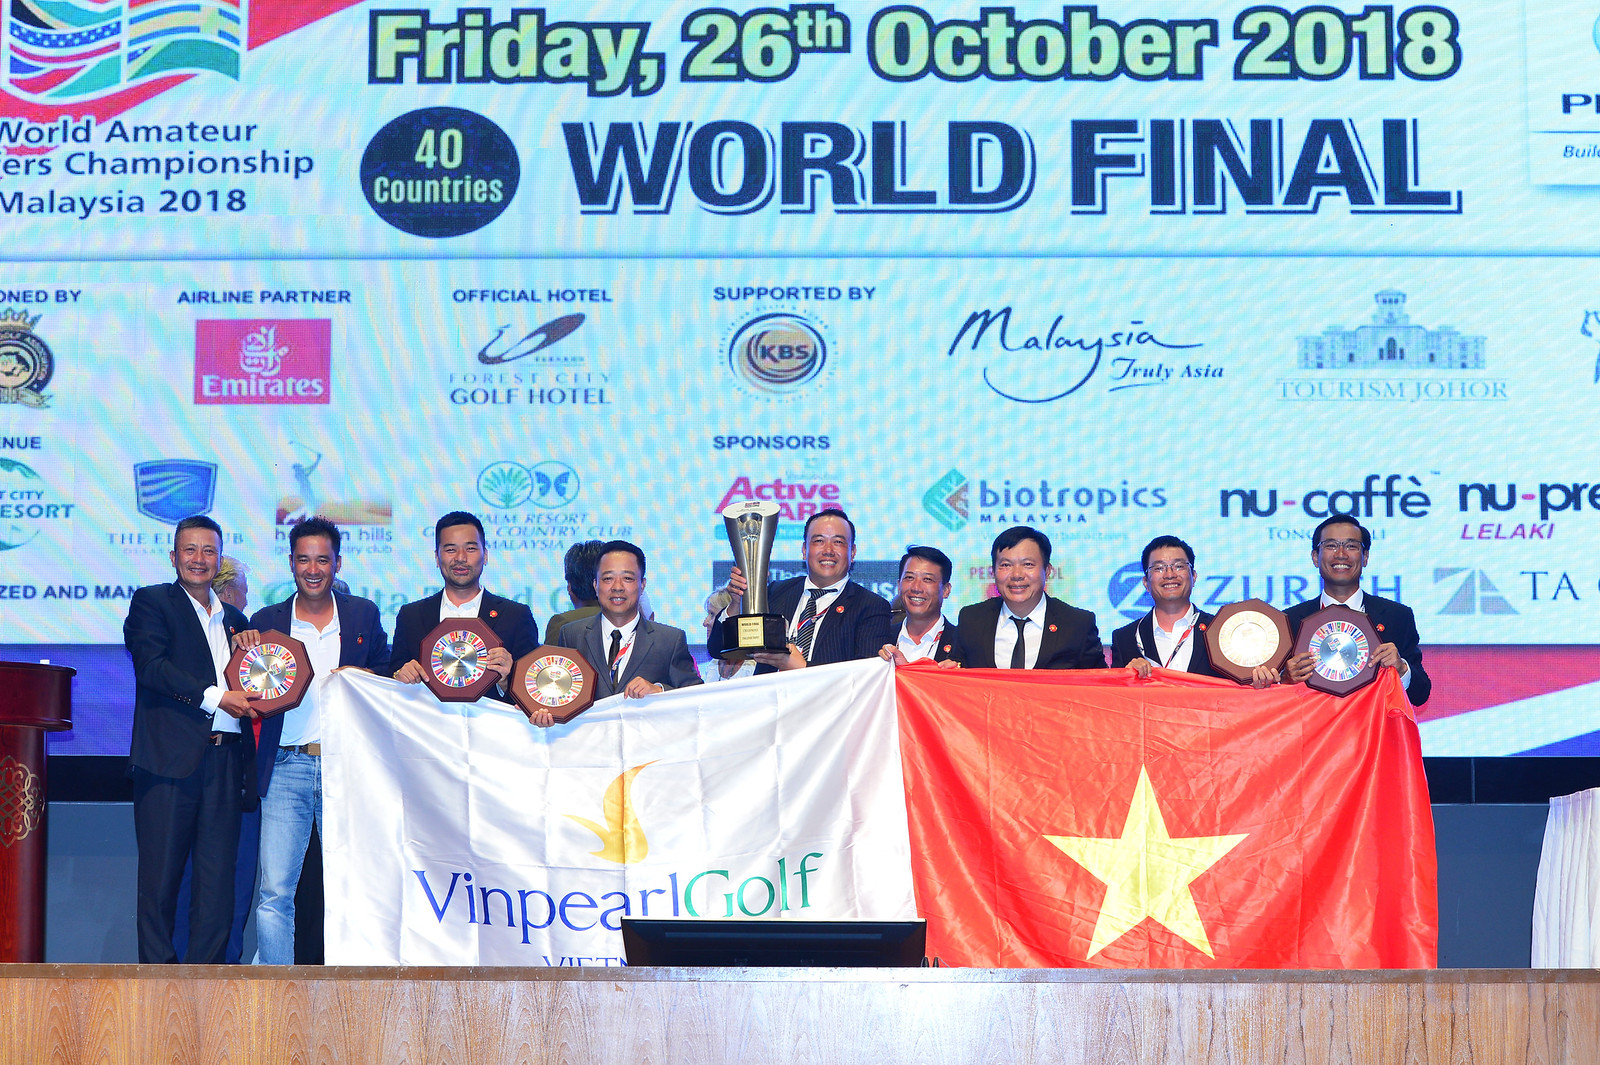 WAGC Thế giới 2018: Hành trình đáng nhớ của tuyển WAGC Việt Nam